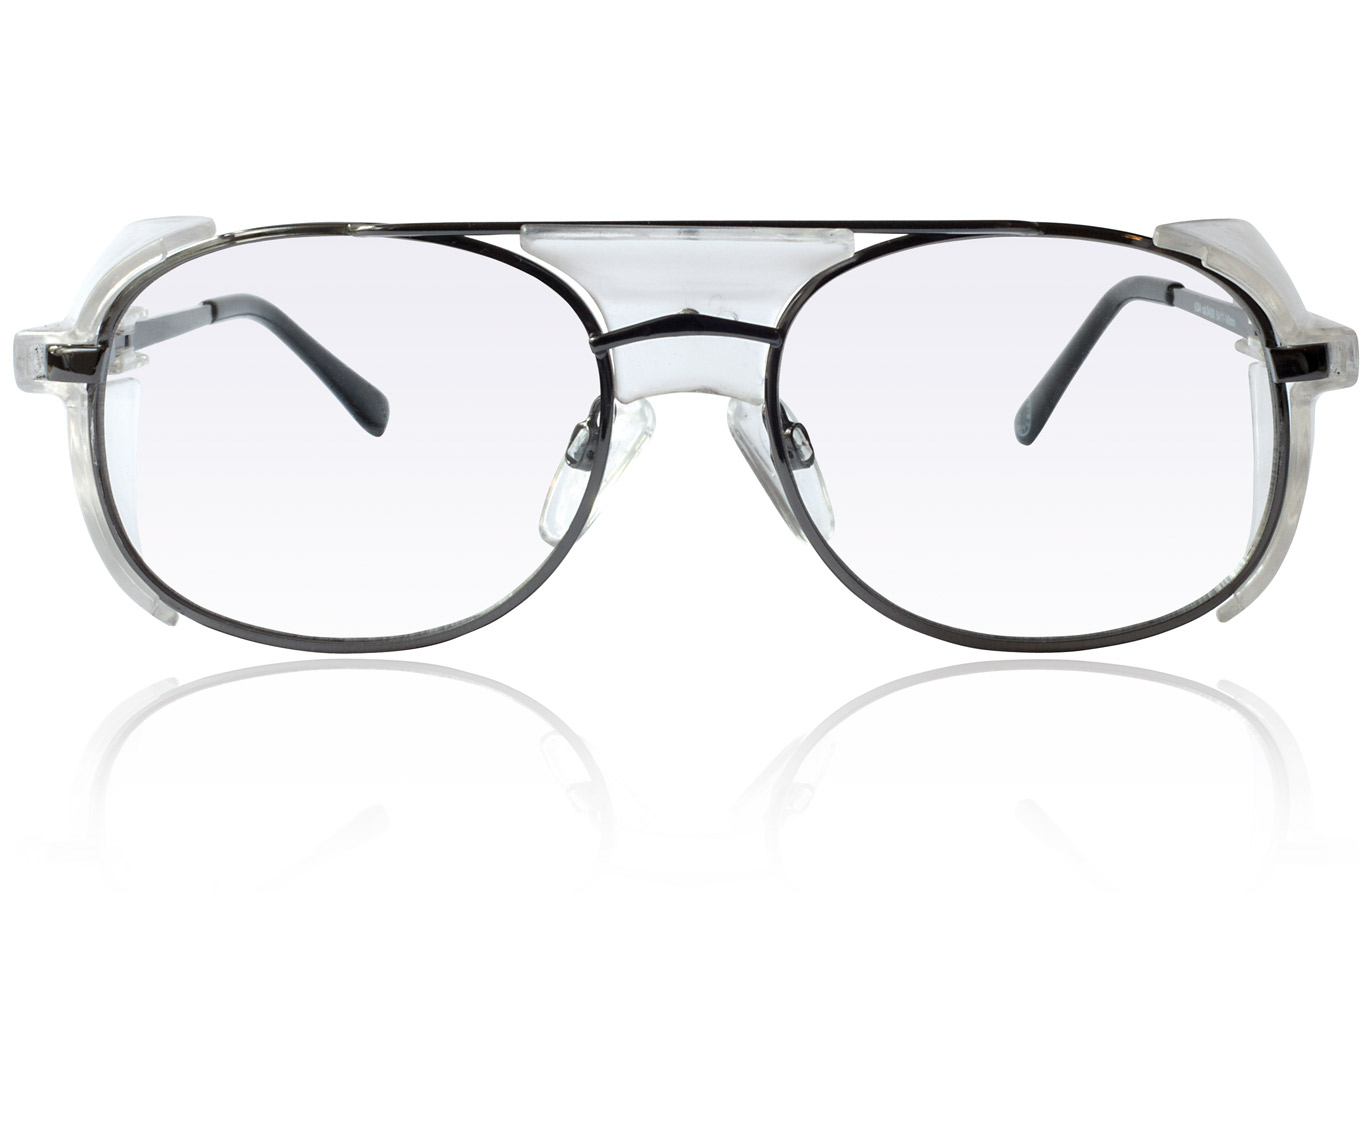 Korrektionsschutzbrille Modell A204